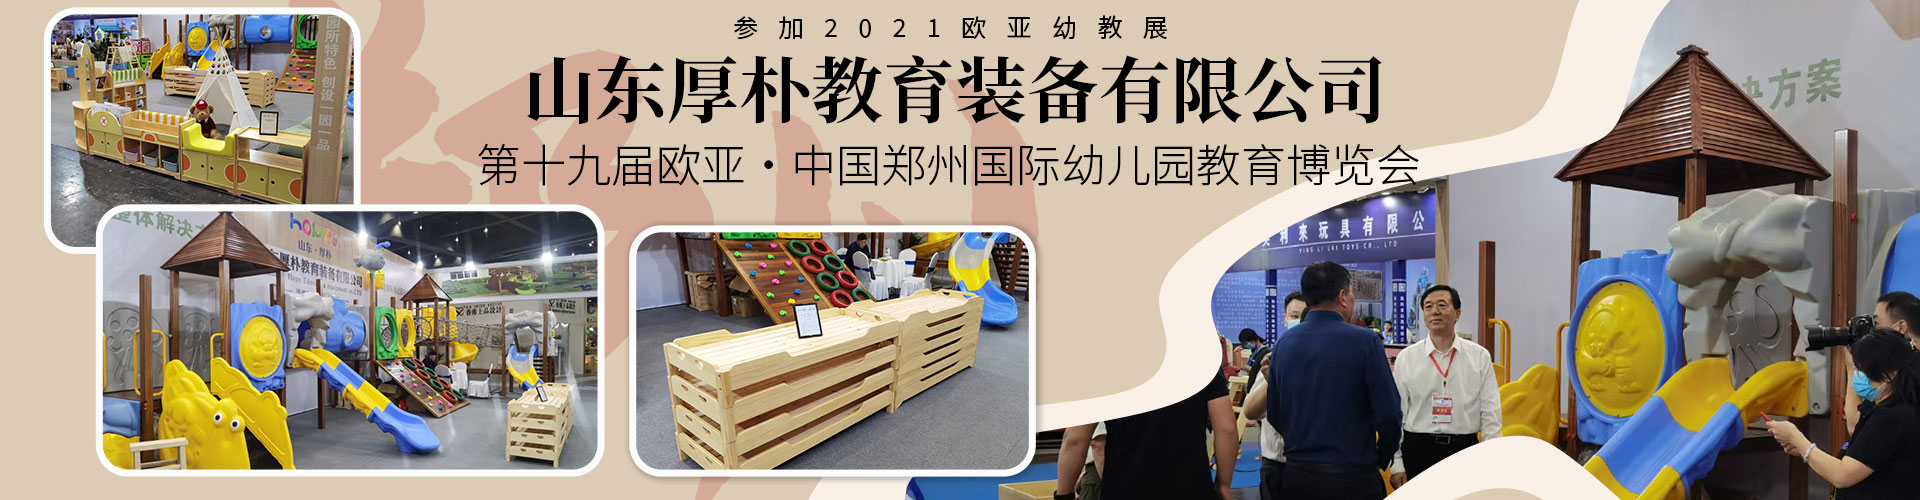 第23届北京国际幼教用品展览会-山东厚朴教育装备盛况